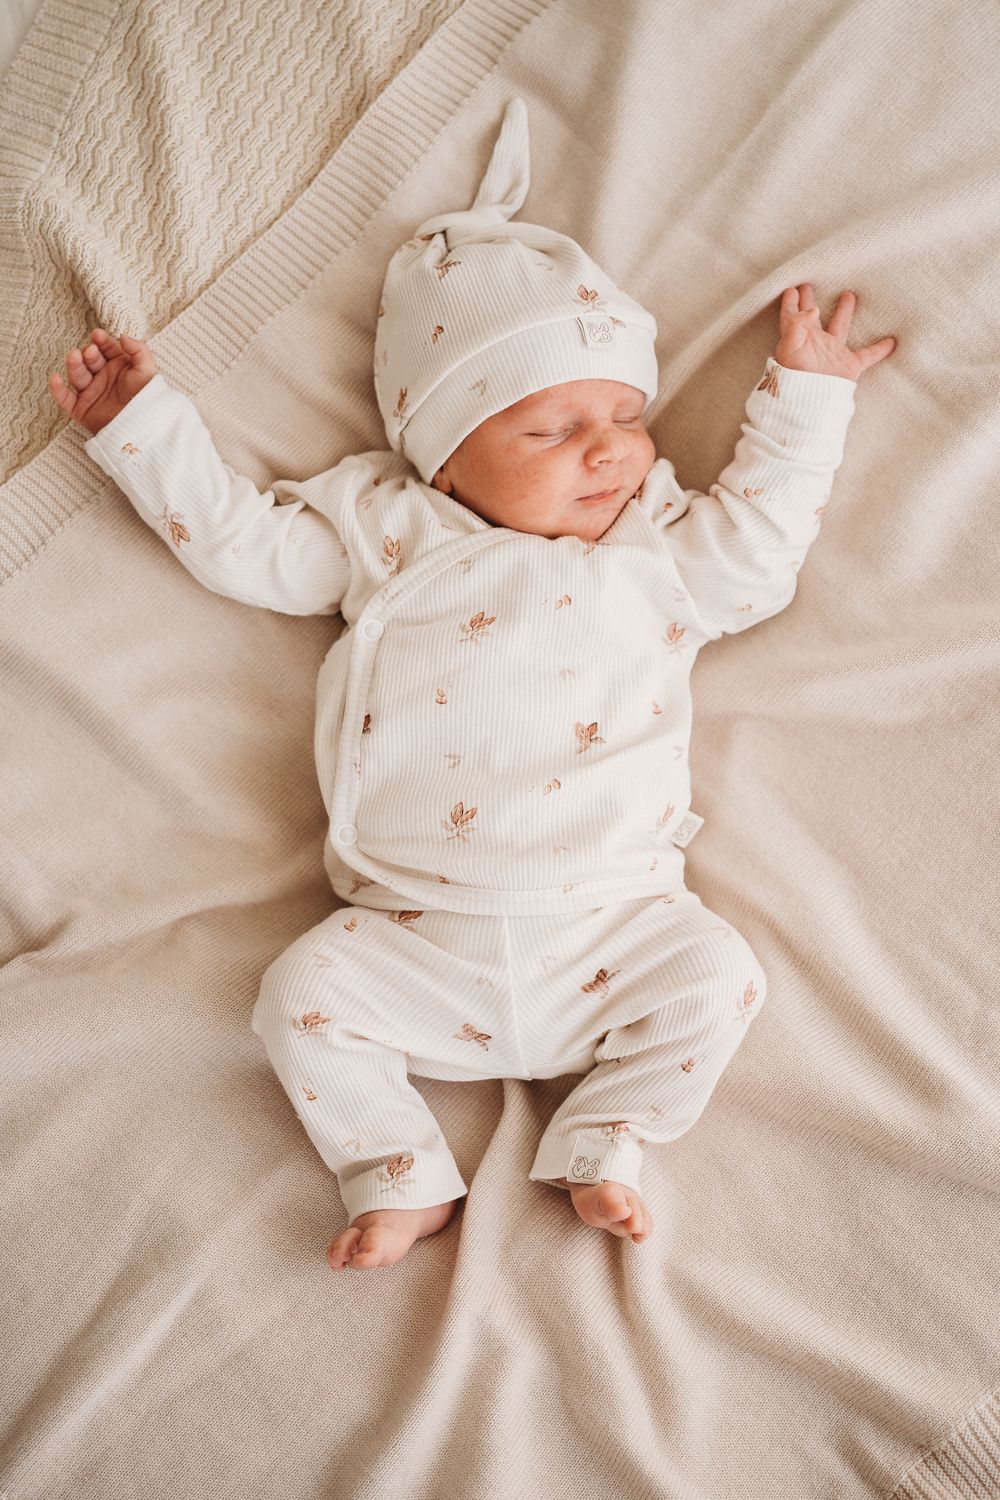 Vreedzame slaap: een pasgeboren baby rust rustig uit in een knusse outfit gemaakt van Yumi Baby's Overslagshirt Cocoa, die de pure onschuld van het vroege leven belichaamt.